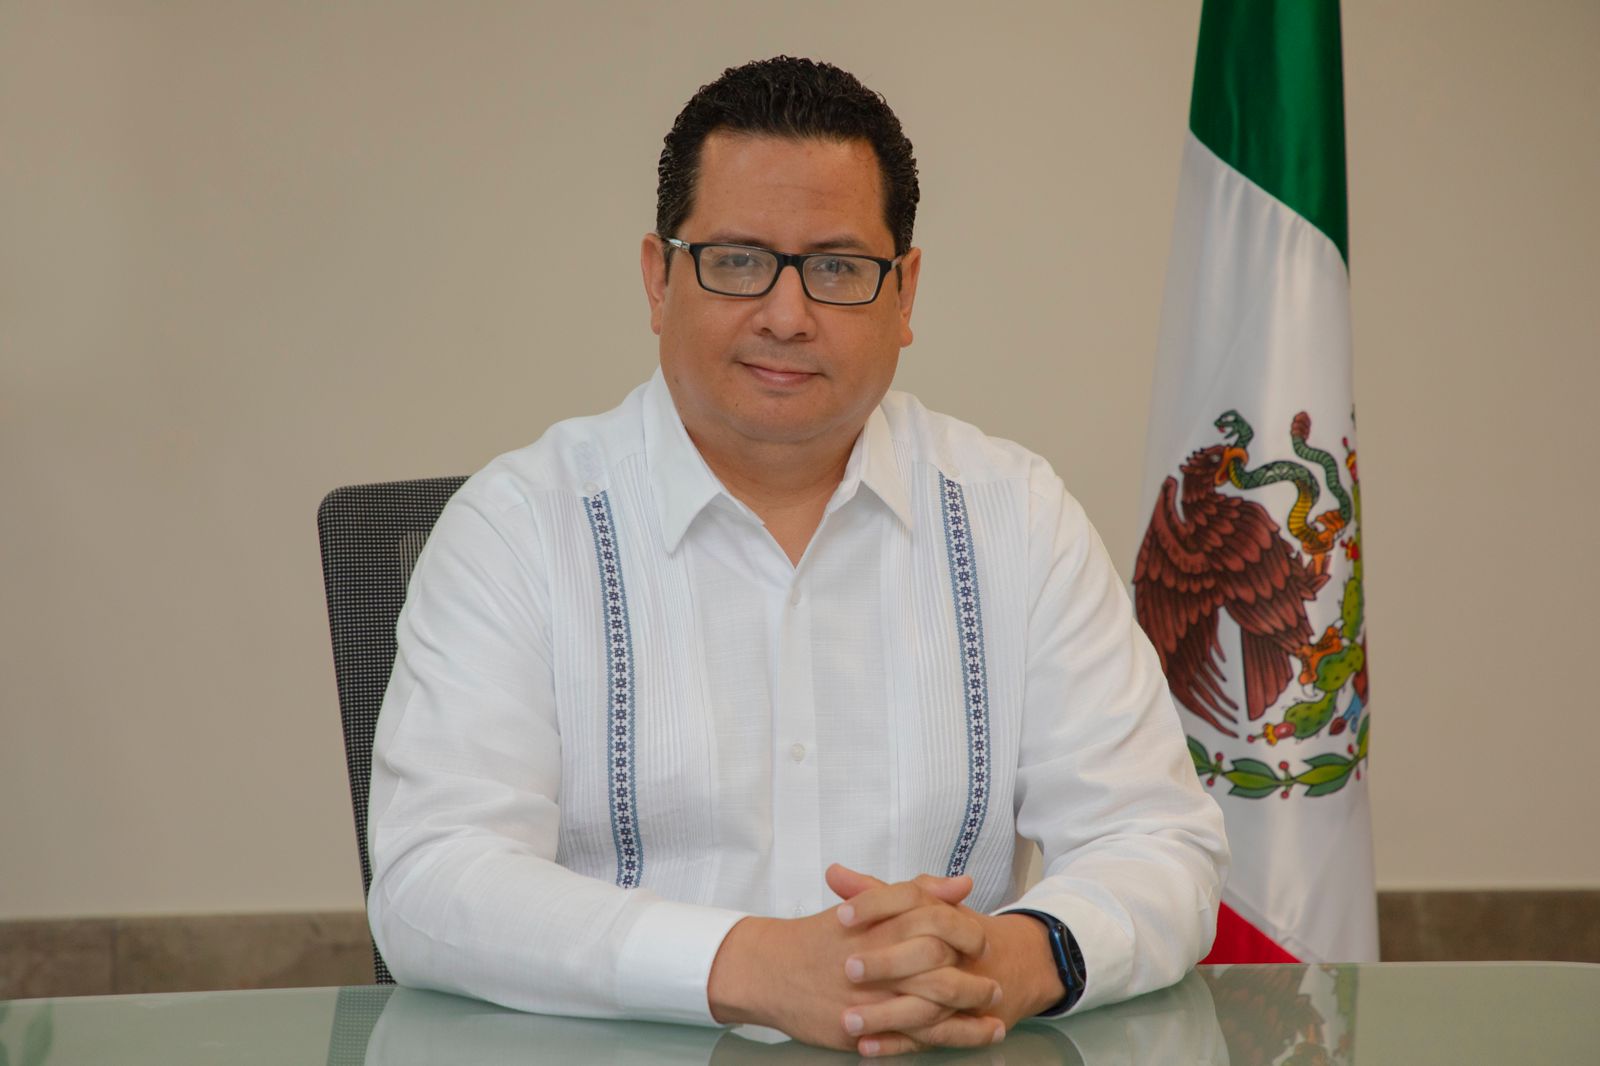 Dr. José Luis Alomía Zegarra